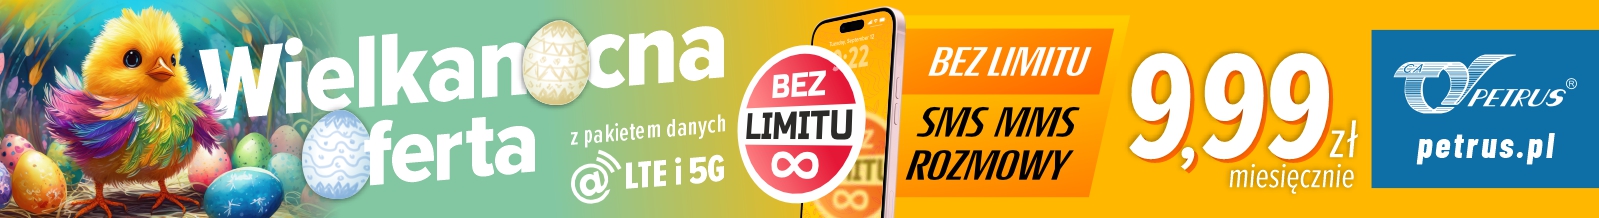 WIELKANOCNA OFERTA Telefon domowo-mobilny już od 9,99 zł